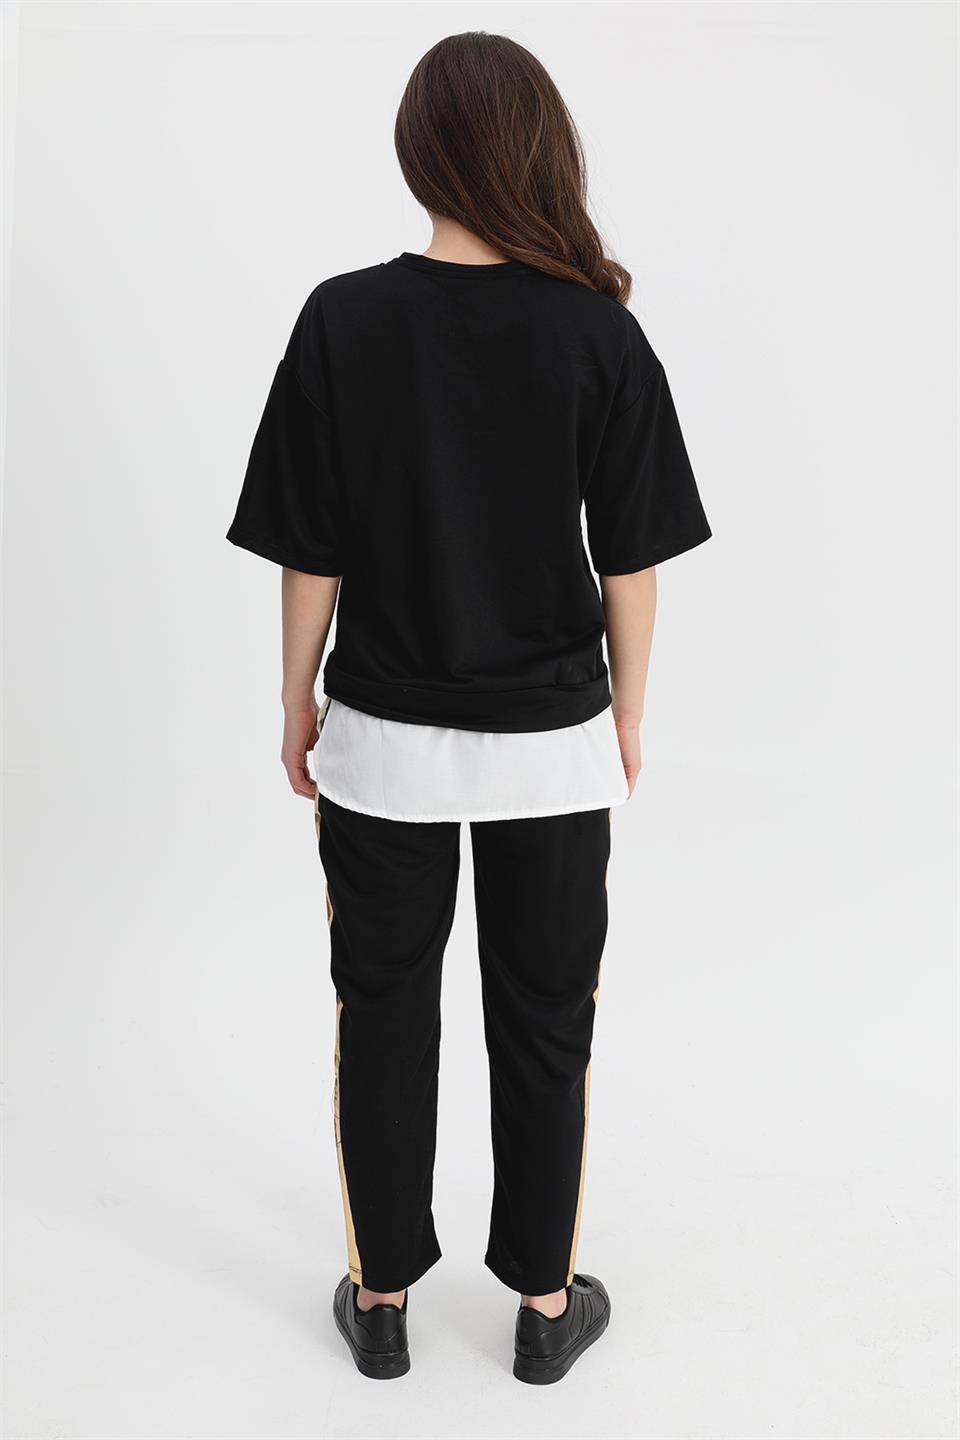 Women's Suit Skirt Grass Bird Printed Elastic Waist T-shirt Trousers - Black - STREET MODE ™